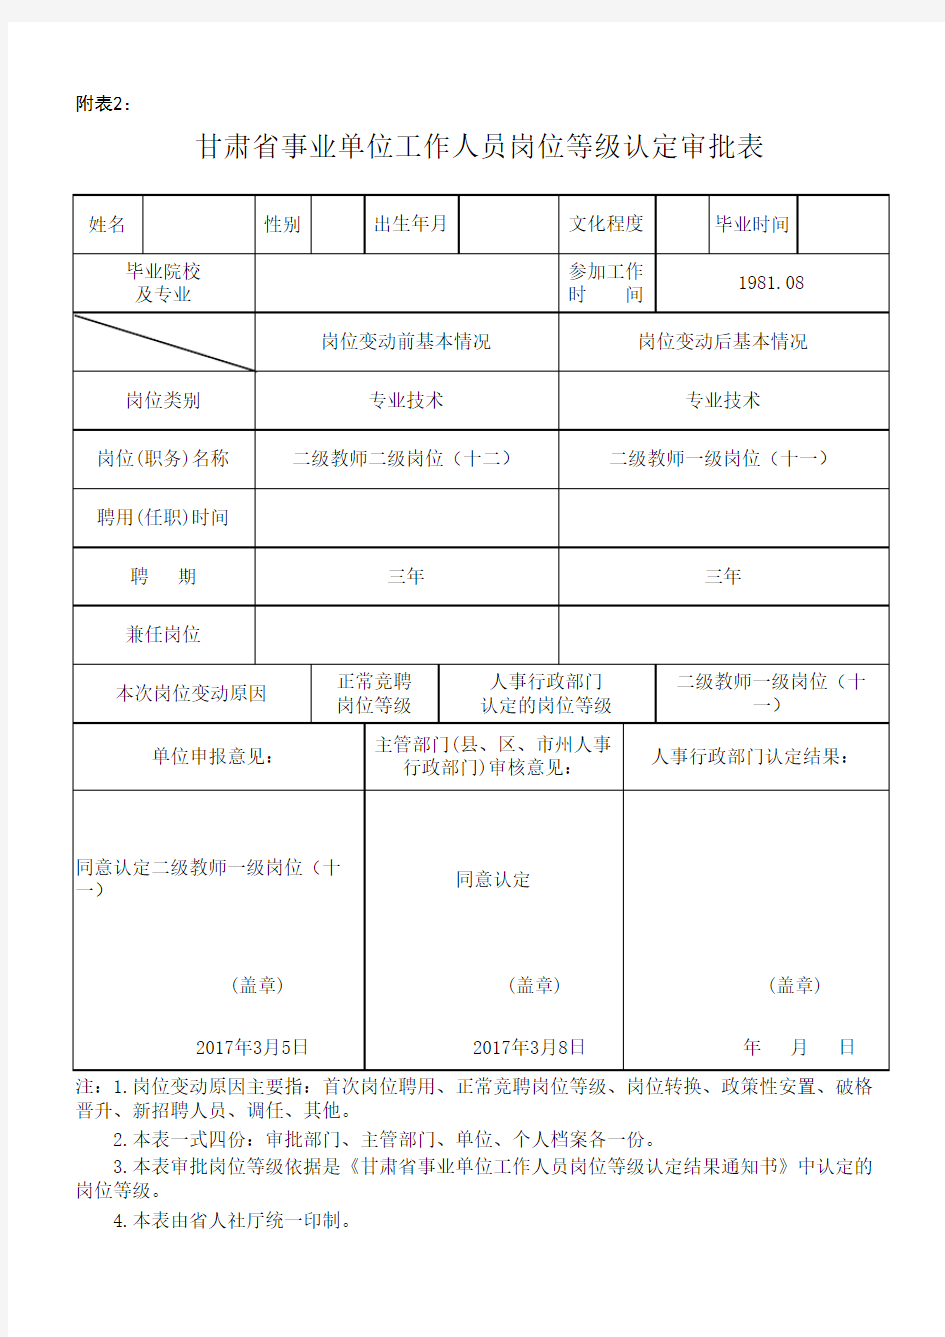 甘肃省事业单位工作人员岗位等级认定审批表 (2)